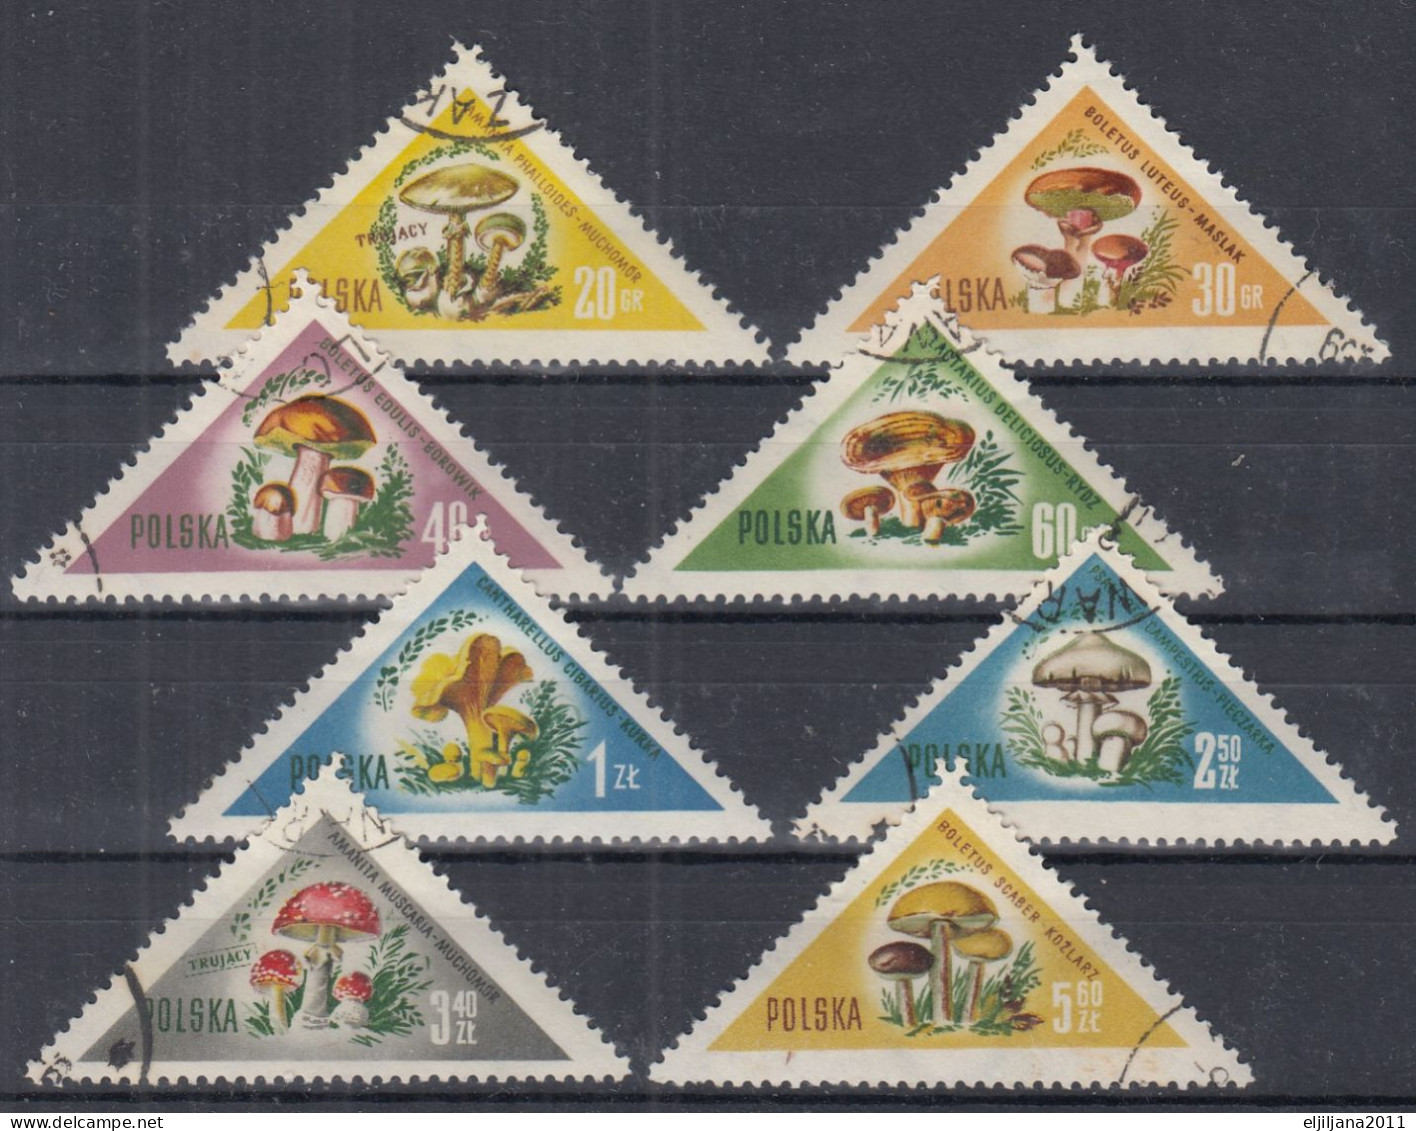 ⁕ Poland / Polska 1959 ⁕ Pilze / Mushrooms Mi.1093-1100 ⁕ 8v Used - Used Stamps